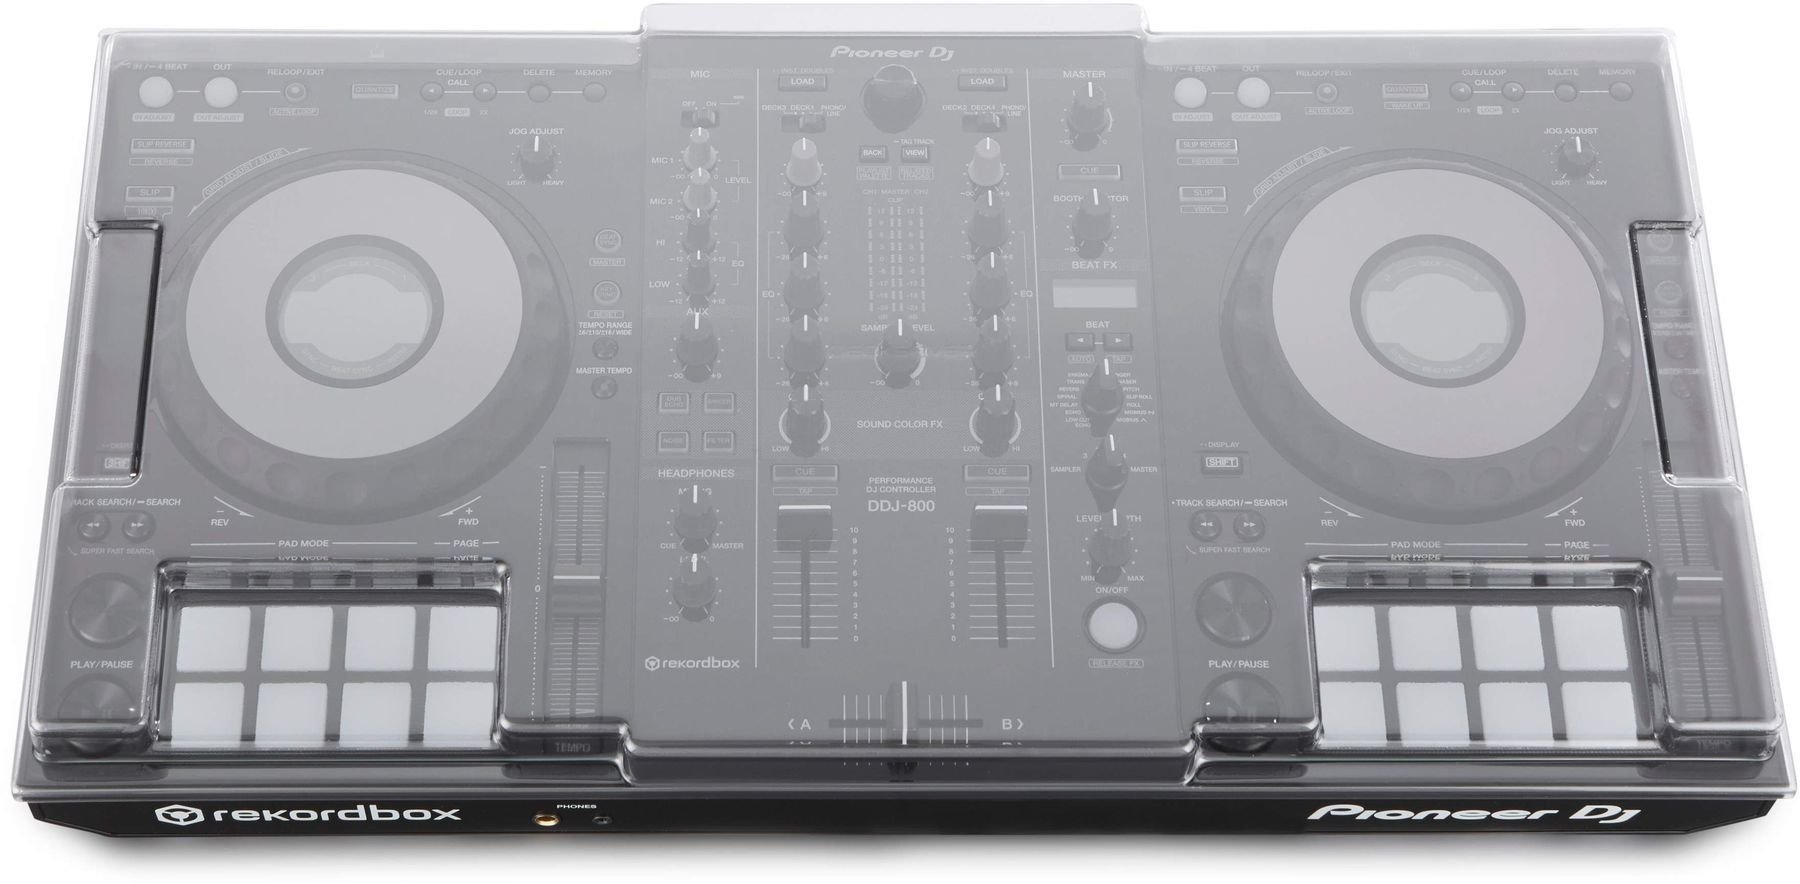 Pokrov za DJ kontroler Decksaver Pioneer DDJ-800